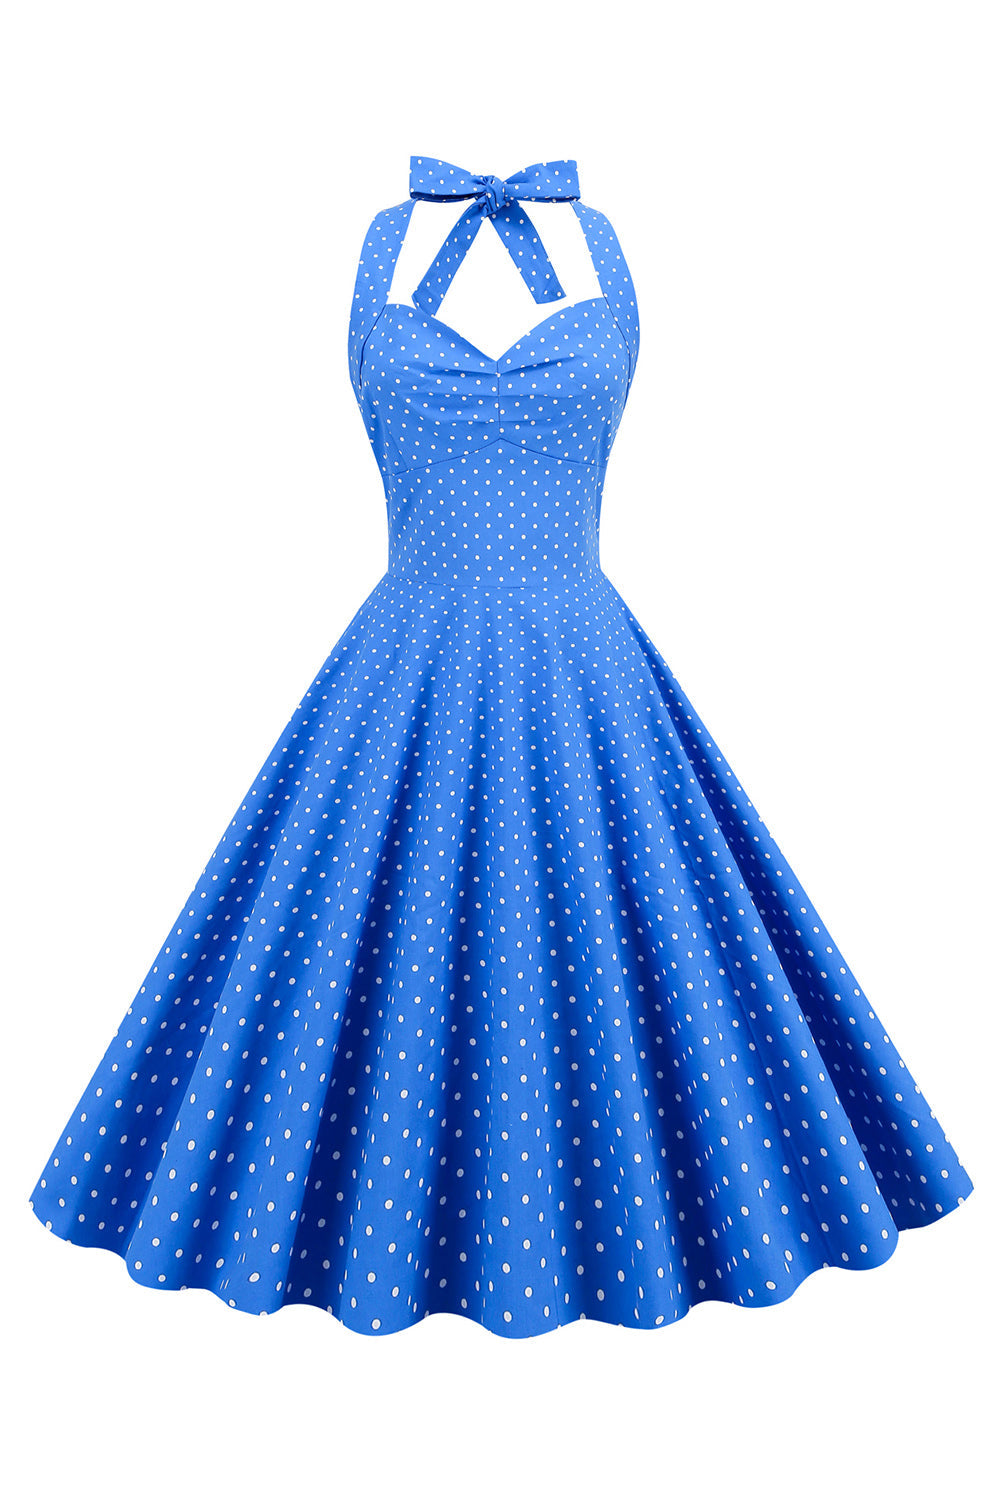 Halter Neck Blue Polka Dots Vintage Dress com Backless